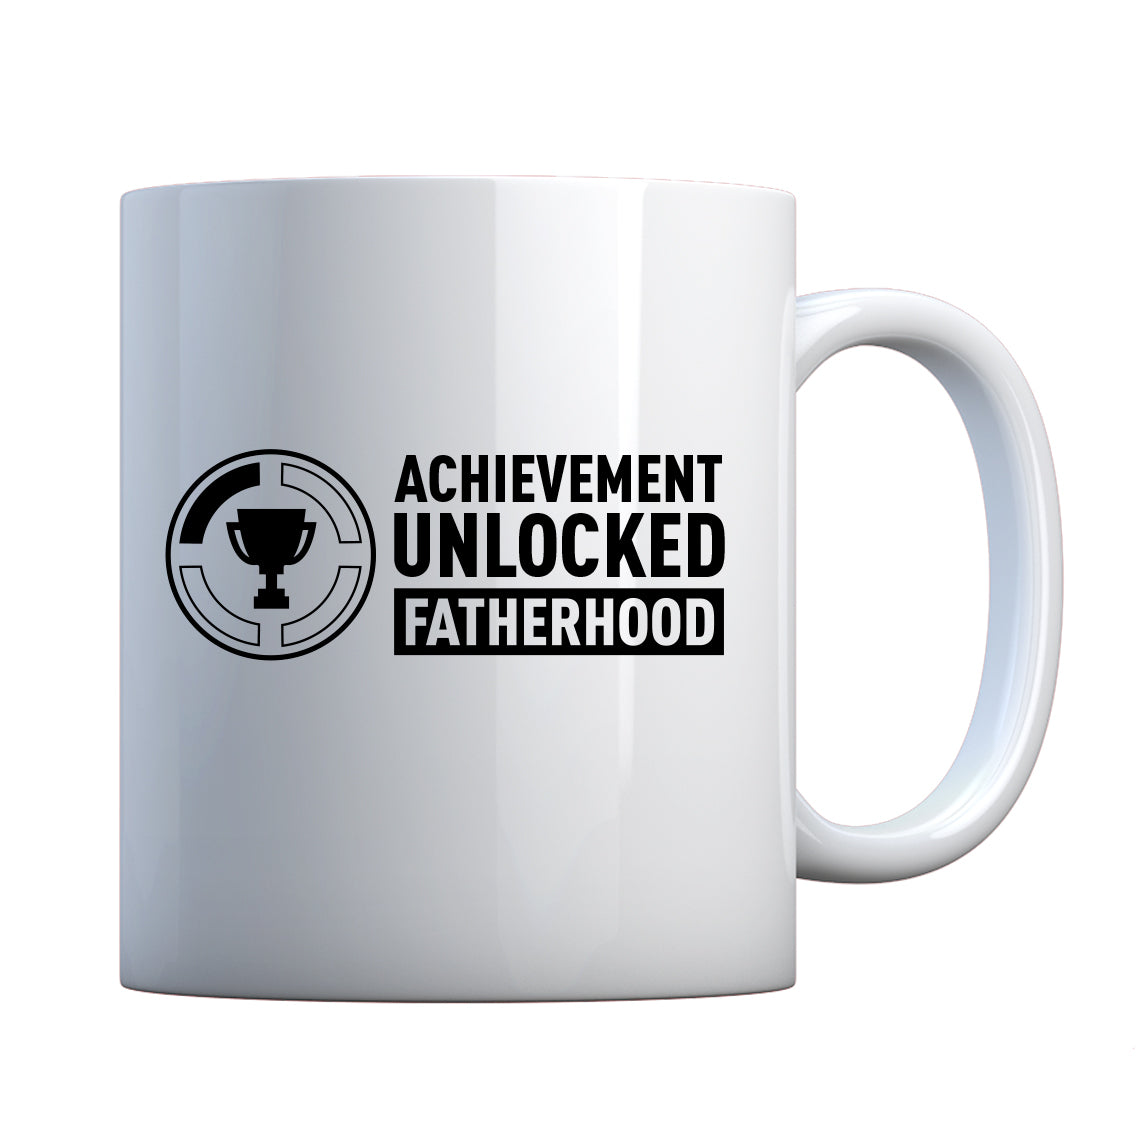 Achievement Unlocked Fatherhood Ceramic Gift Mug